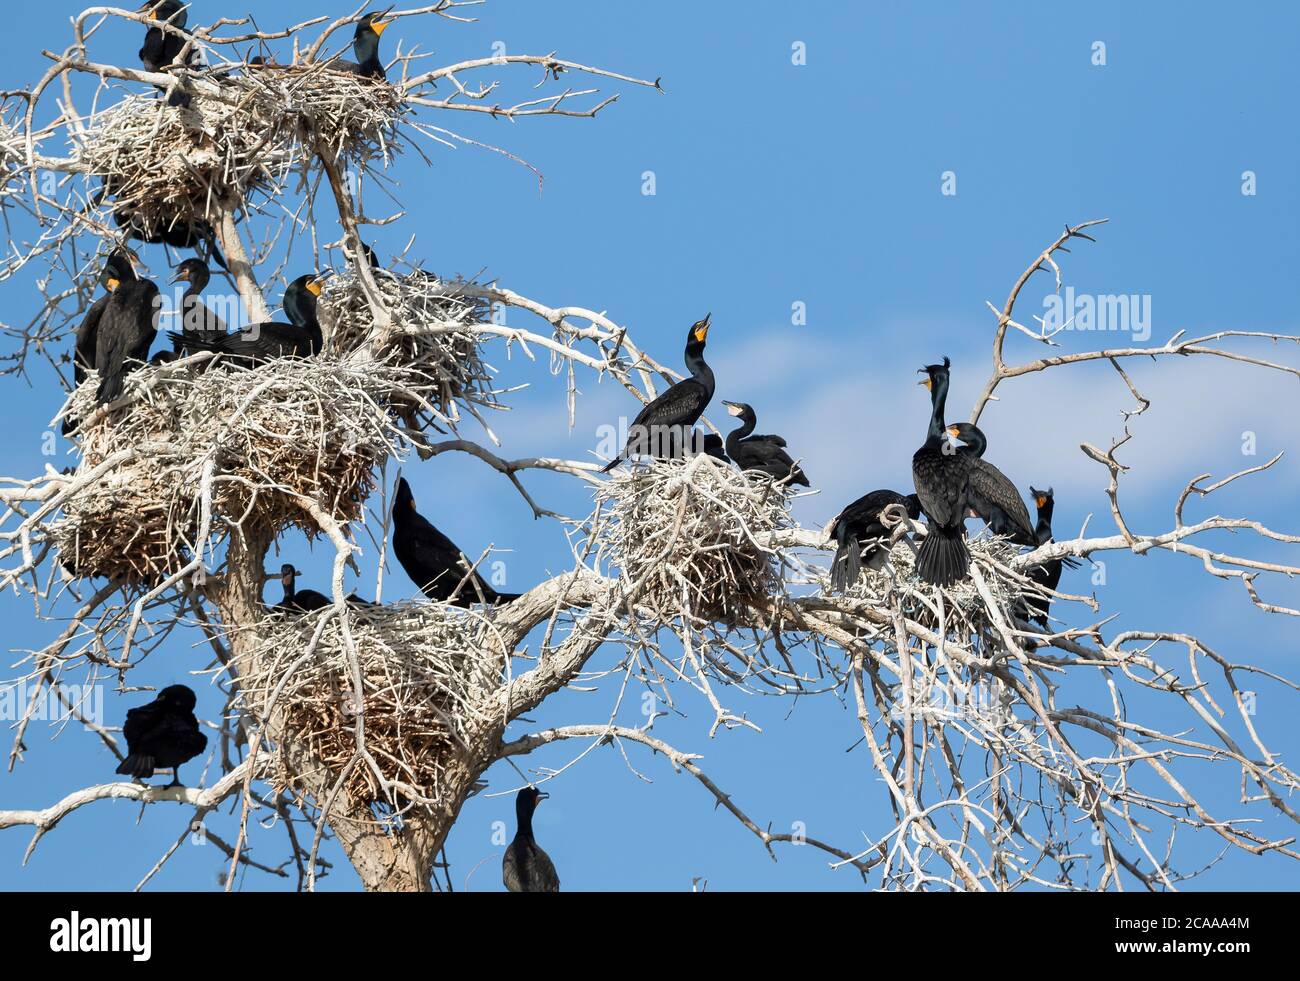 Una colonia di cormorani a doppia cresta in un albero morto alto, con numerosi nidi stratificati che ospitano adulti e giovani giovani contro un cielo blu. Foto Stock